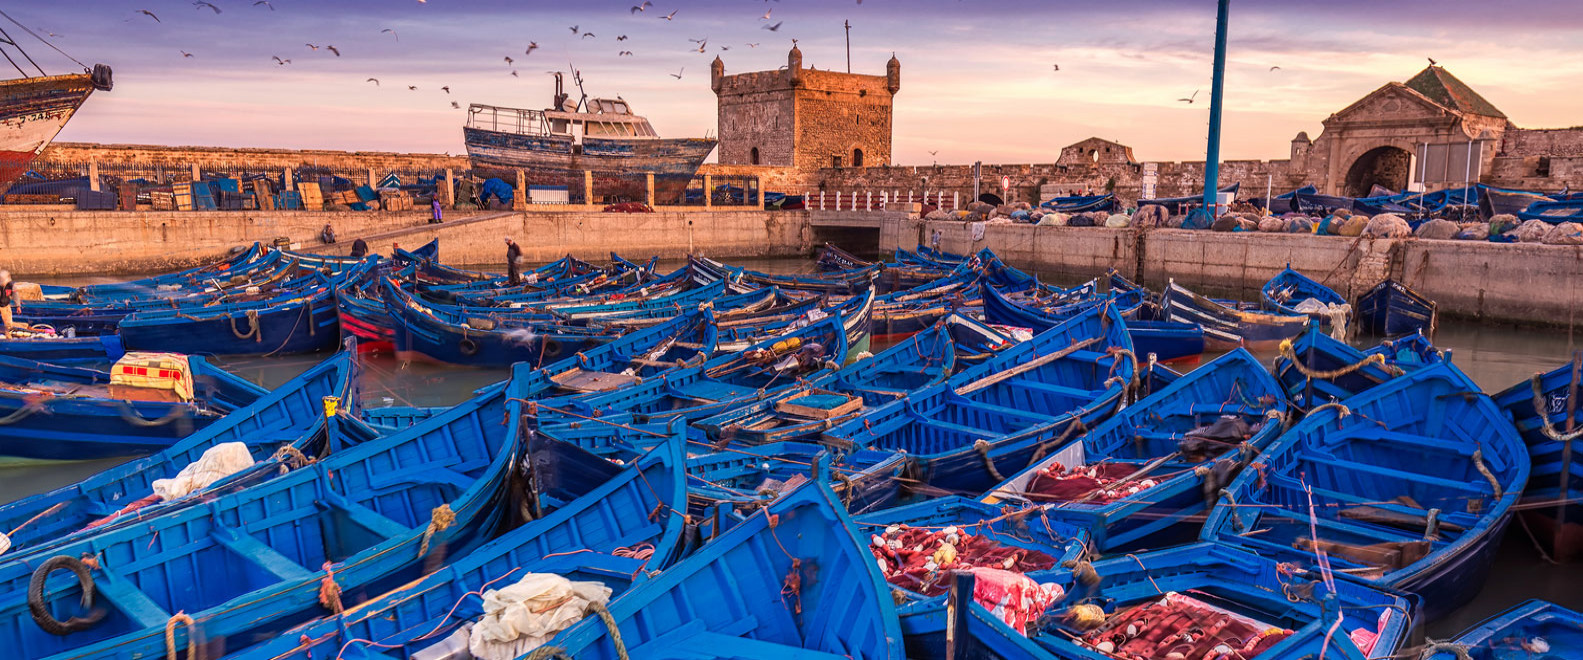 Essaouira-Mogador, una bellezza selvaggia | Ufficio Nazionale Marocchino del Turismo